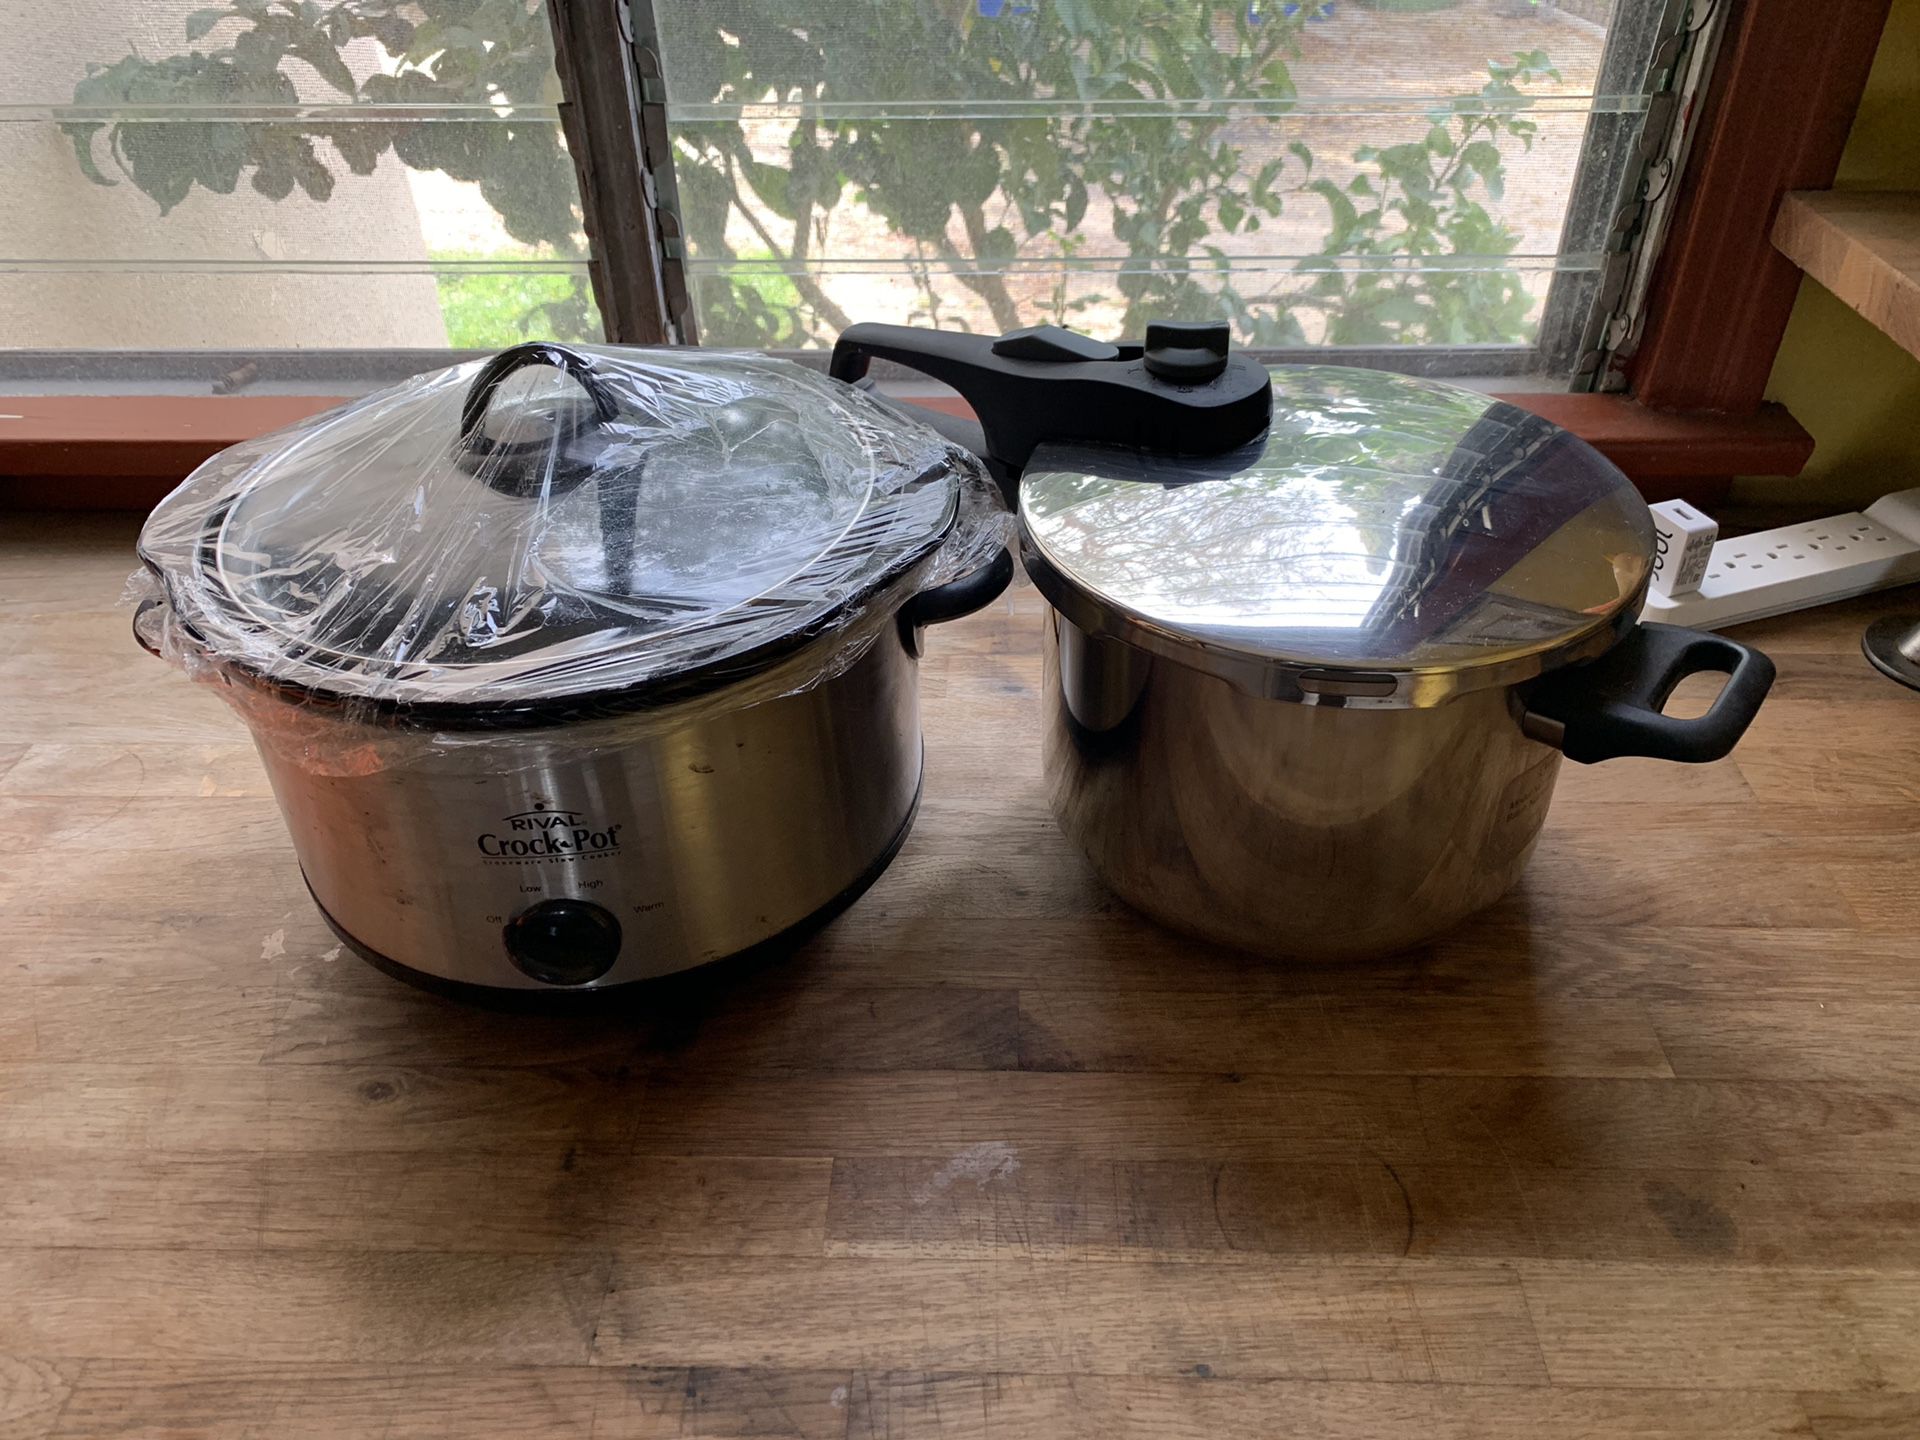 Crock pot/pressure cooker set